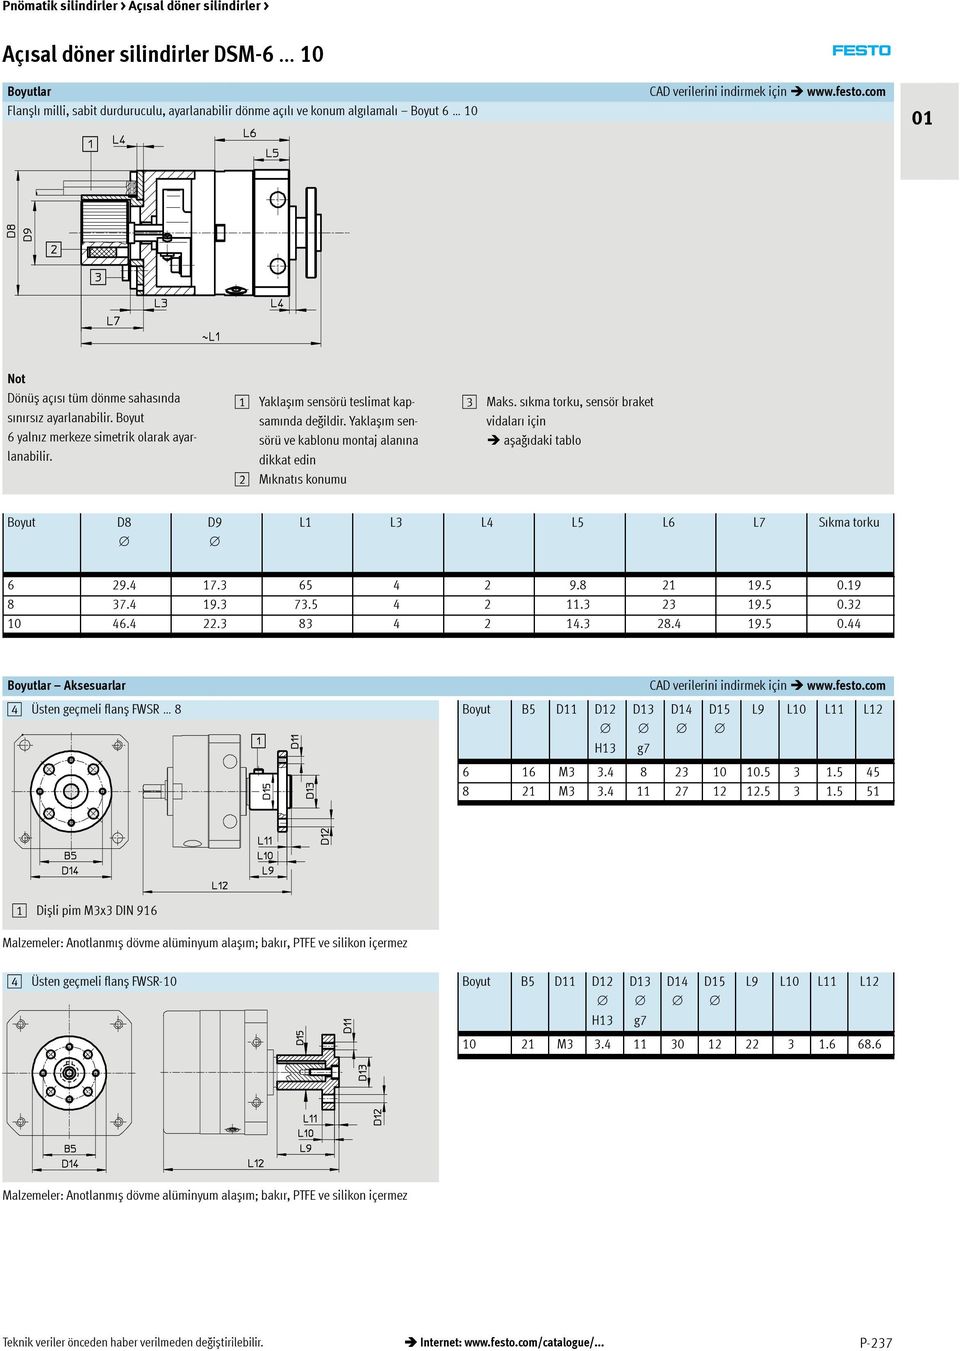 Yaklașımsensörü ve kablonu montaj alanına dikkat edin Mıknatıskonumu 3 Maks. sıkma torku,sensör braket vidaları için așağıdaki tablo D8 D9 L1 L3 L4 L5 L6 L7 Sıkma torku 6 9.4 17.3 65 4 9.8 1 19.5 0.